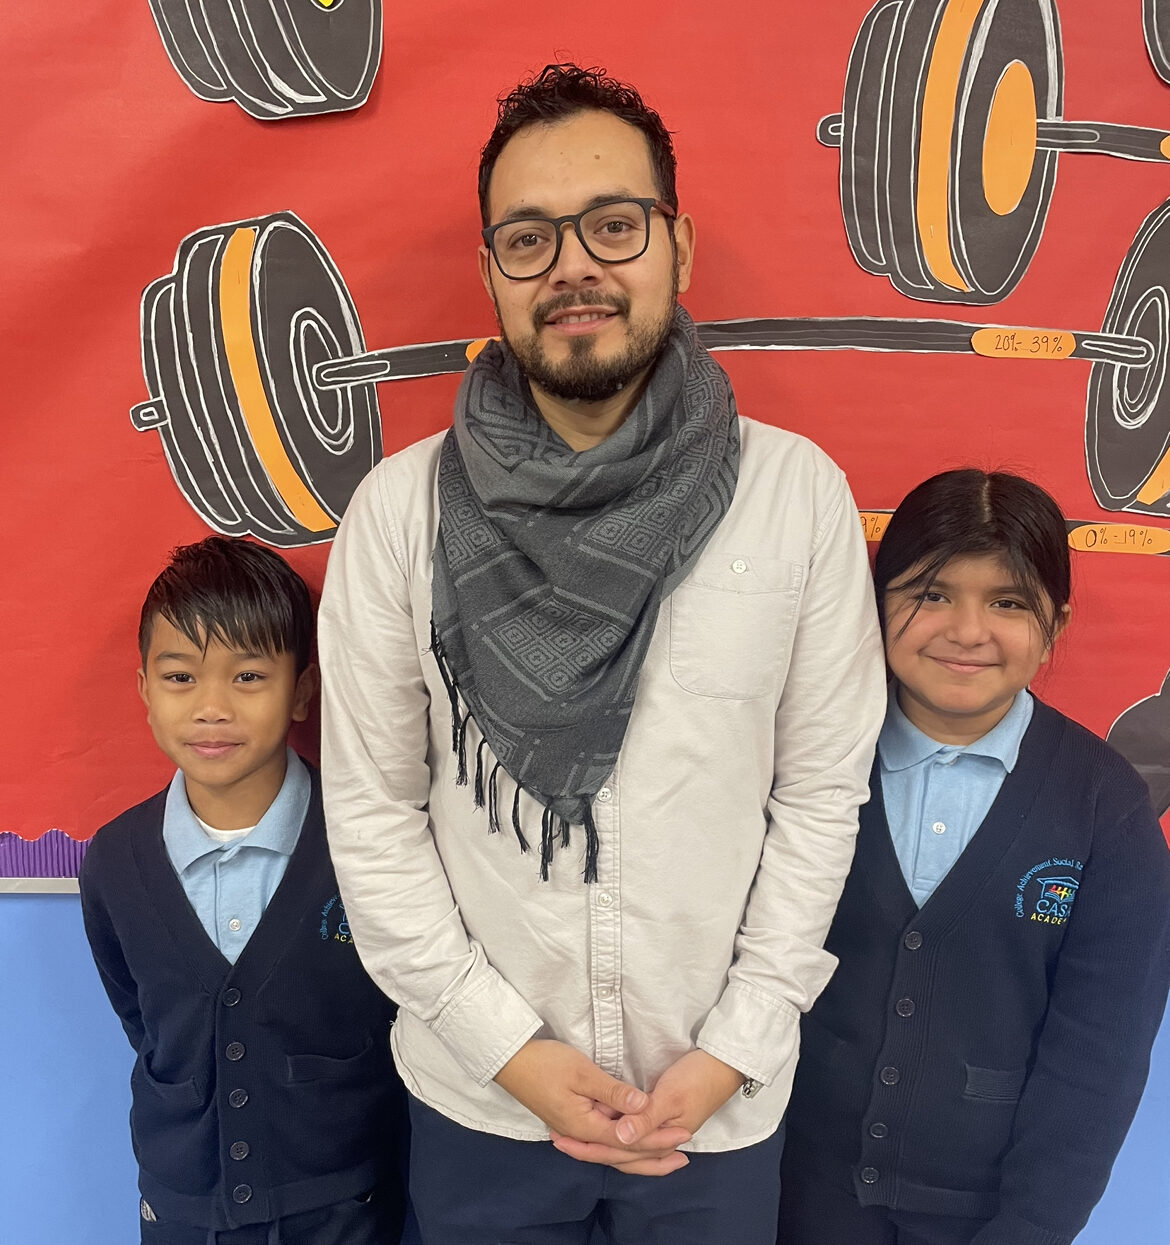 Jonathan Reynoso, a CASA Academy teacher, smiles with 2 students. 